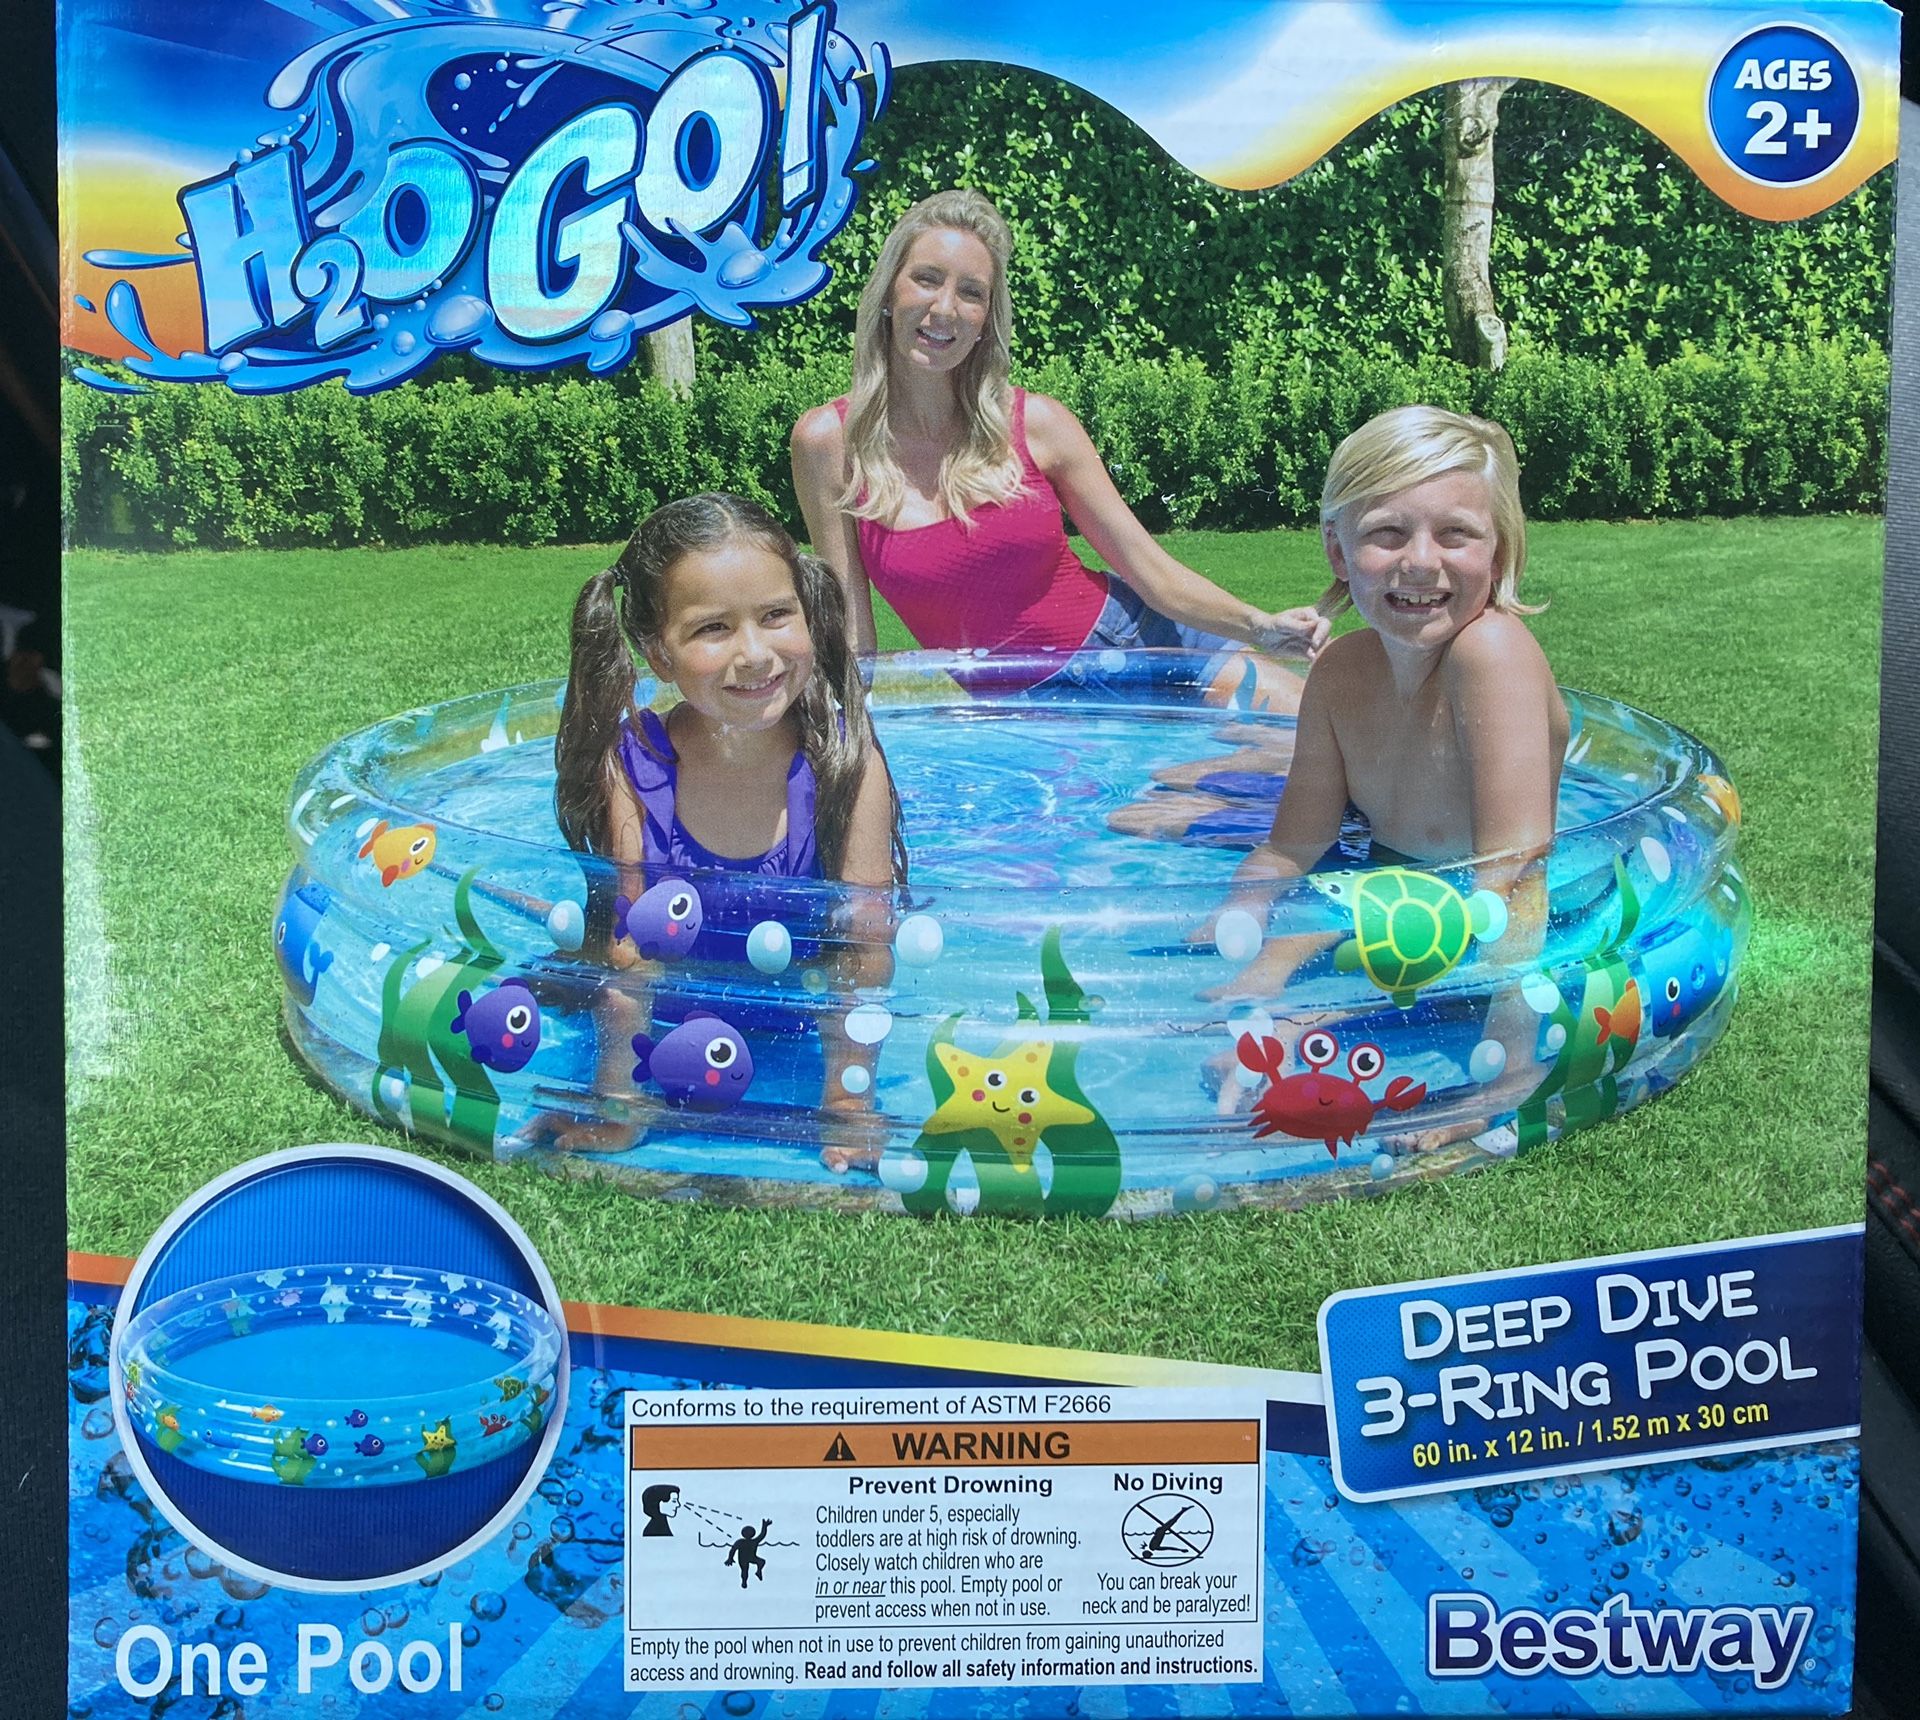 NEW sealed in box kids 60 in pool!!